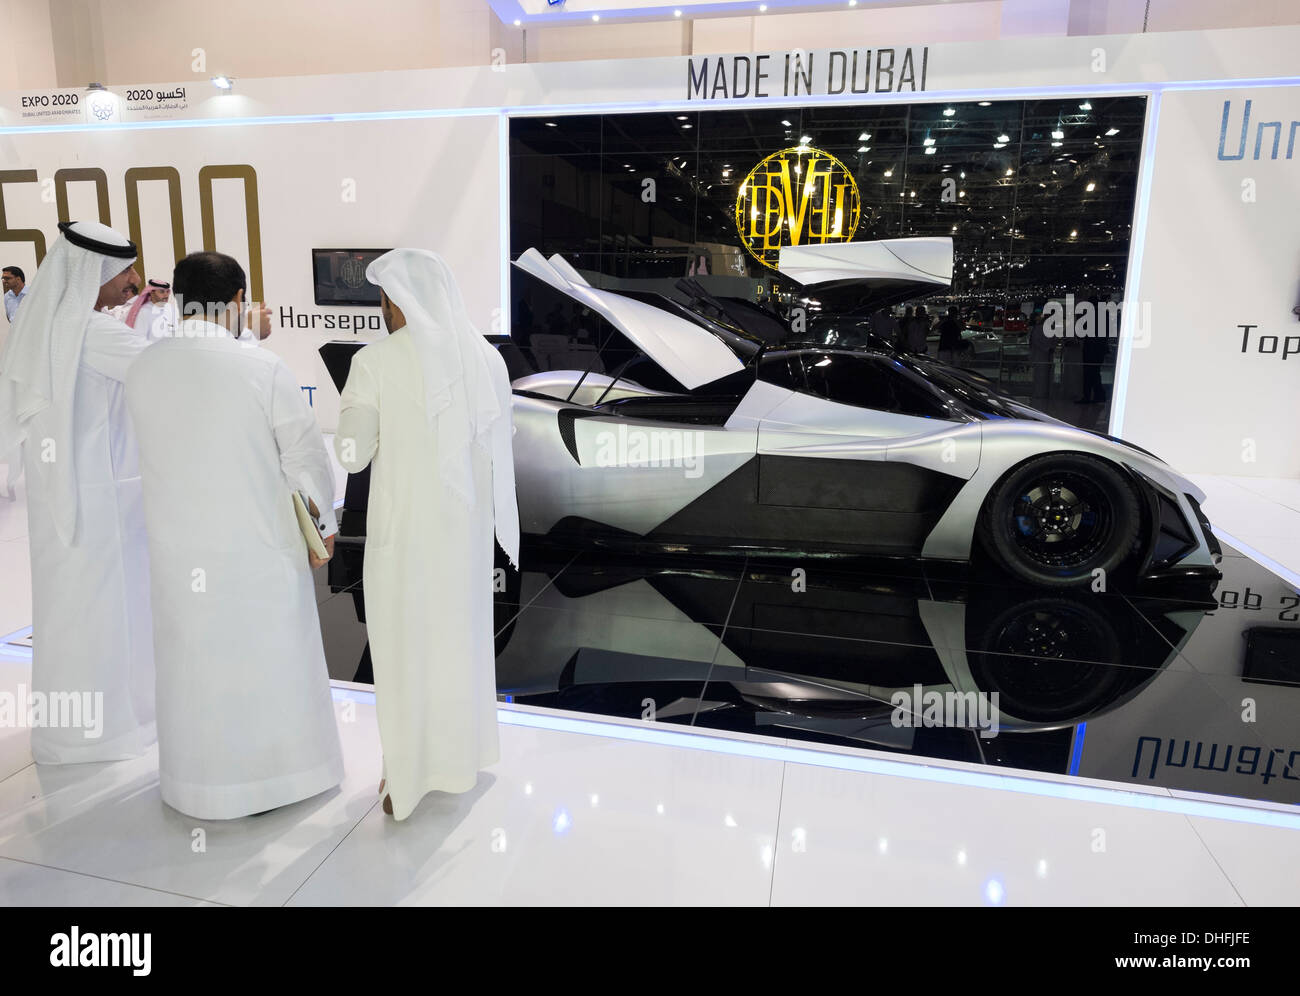 Devel supercar prototype au Dubaï Motor Show 2013 Emirats Arabes Unis Banque D'Images